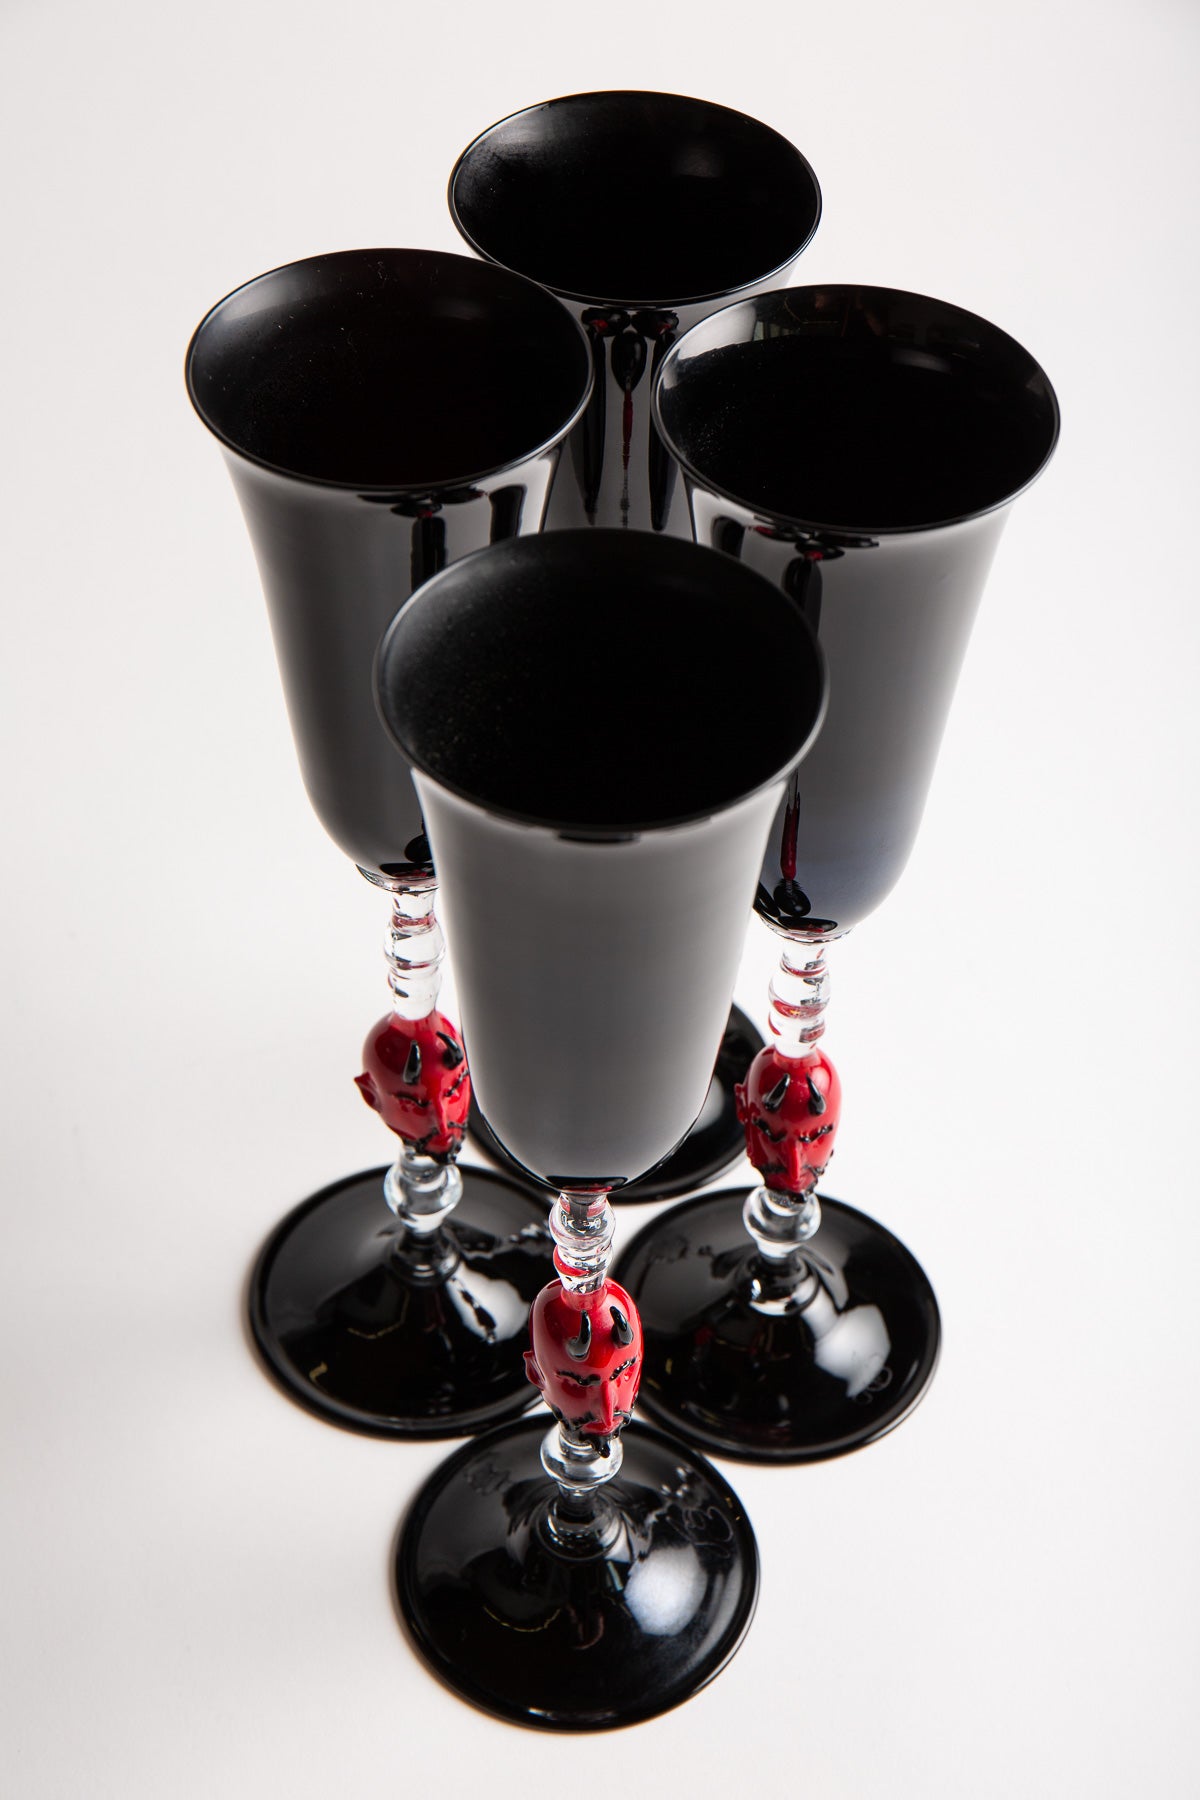 MAXFIELD PRIVATE COLLECTION | SET OF 4 DEVIL CHAMPAGNE GLASSES